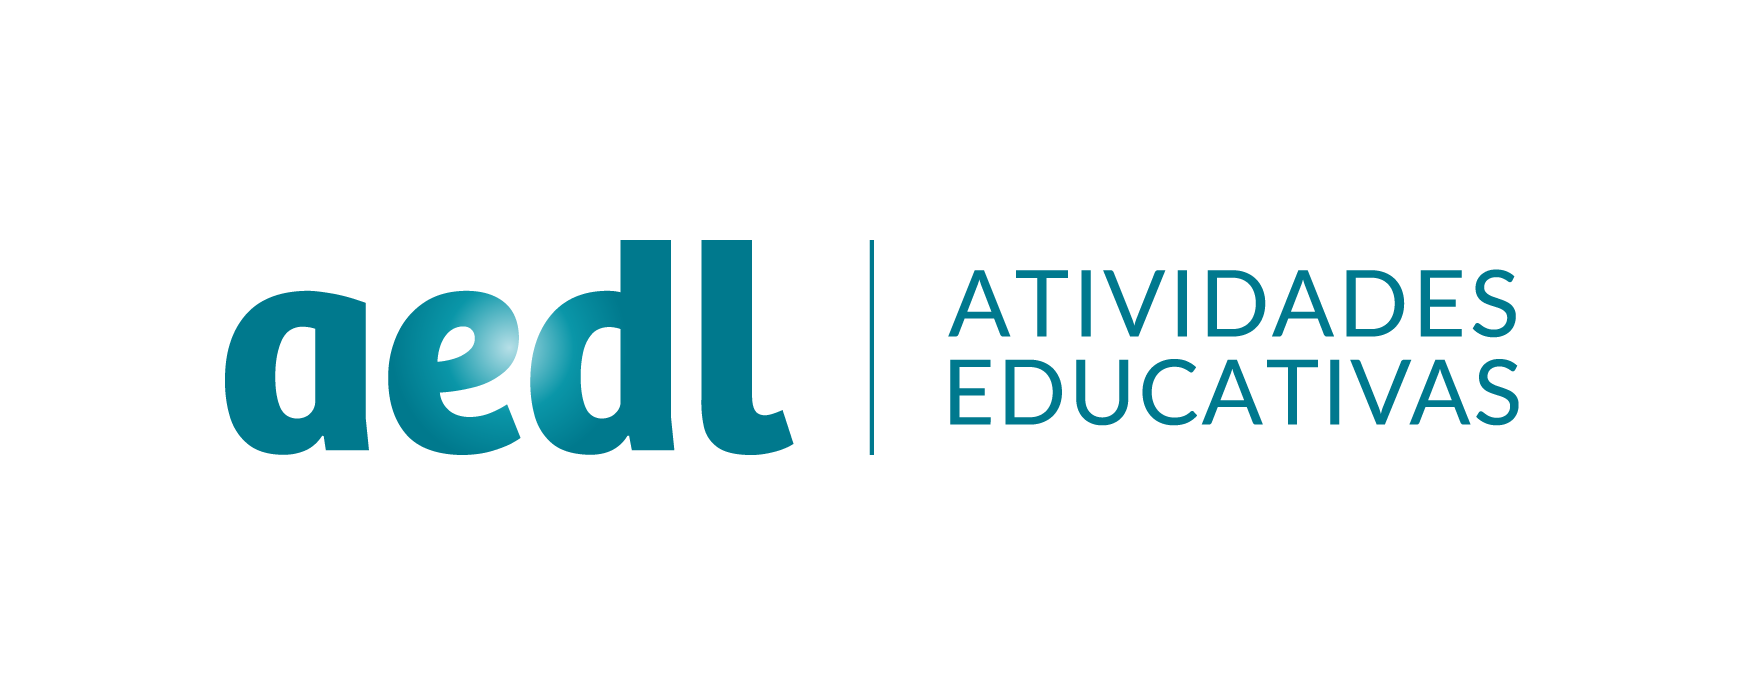 AEDL Logo